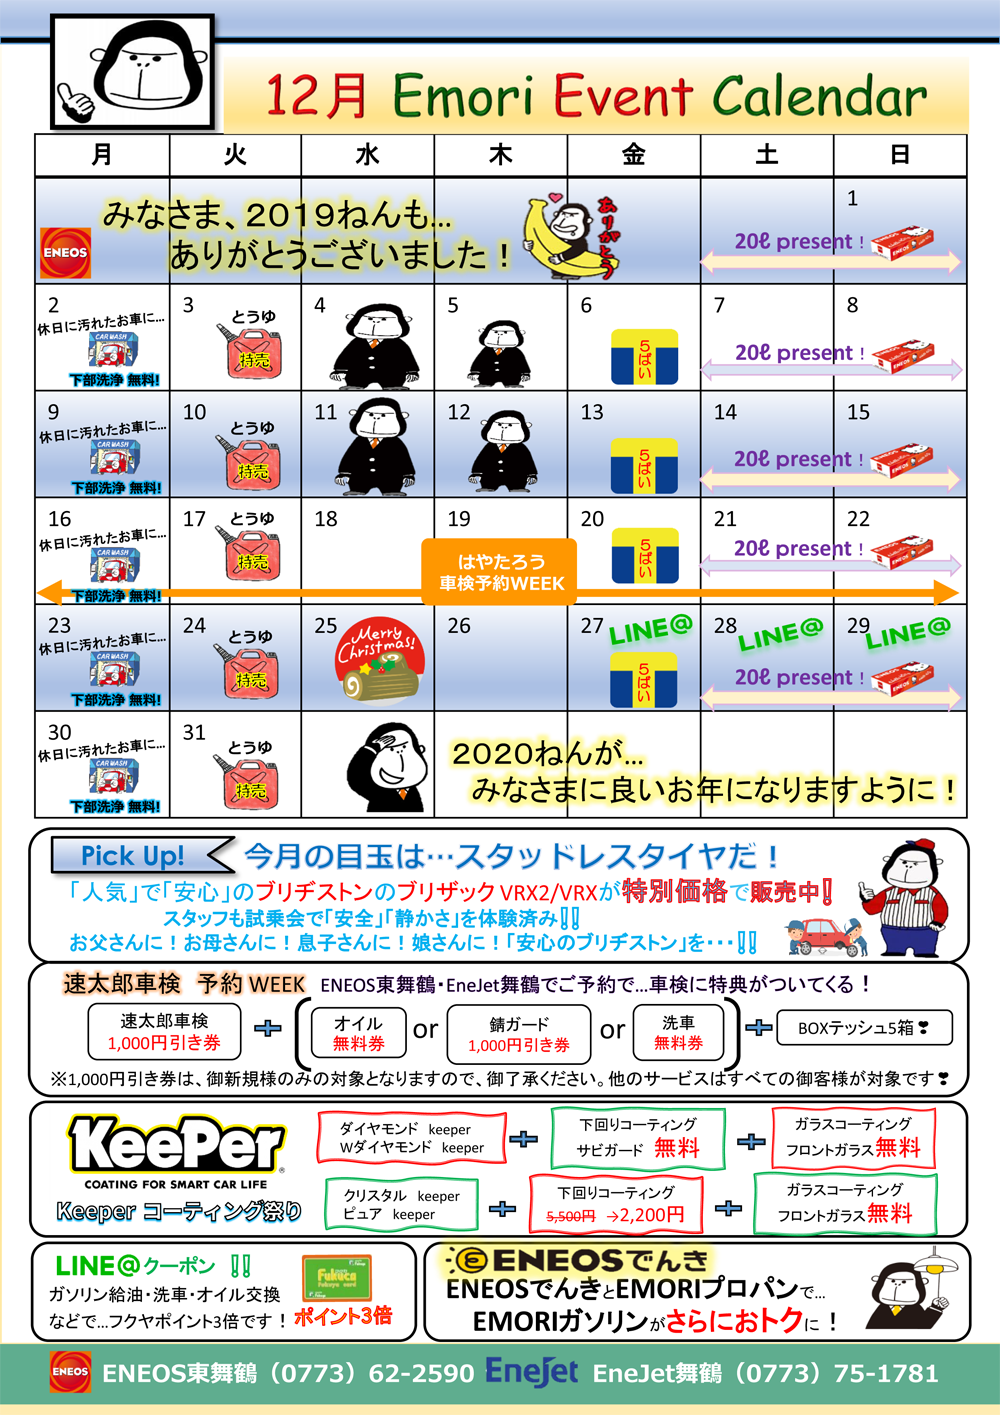 12月キャンペーンカレンダー カーライフサポート 江守石油株式会社